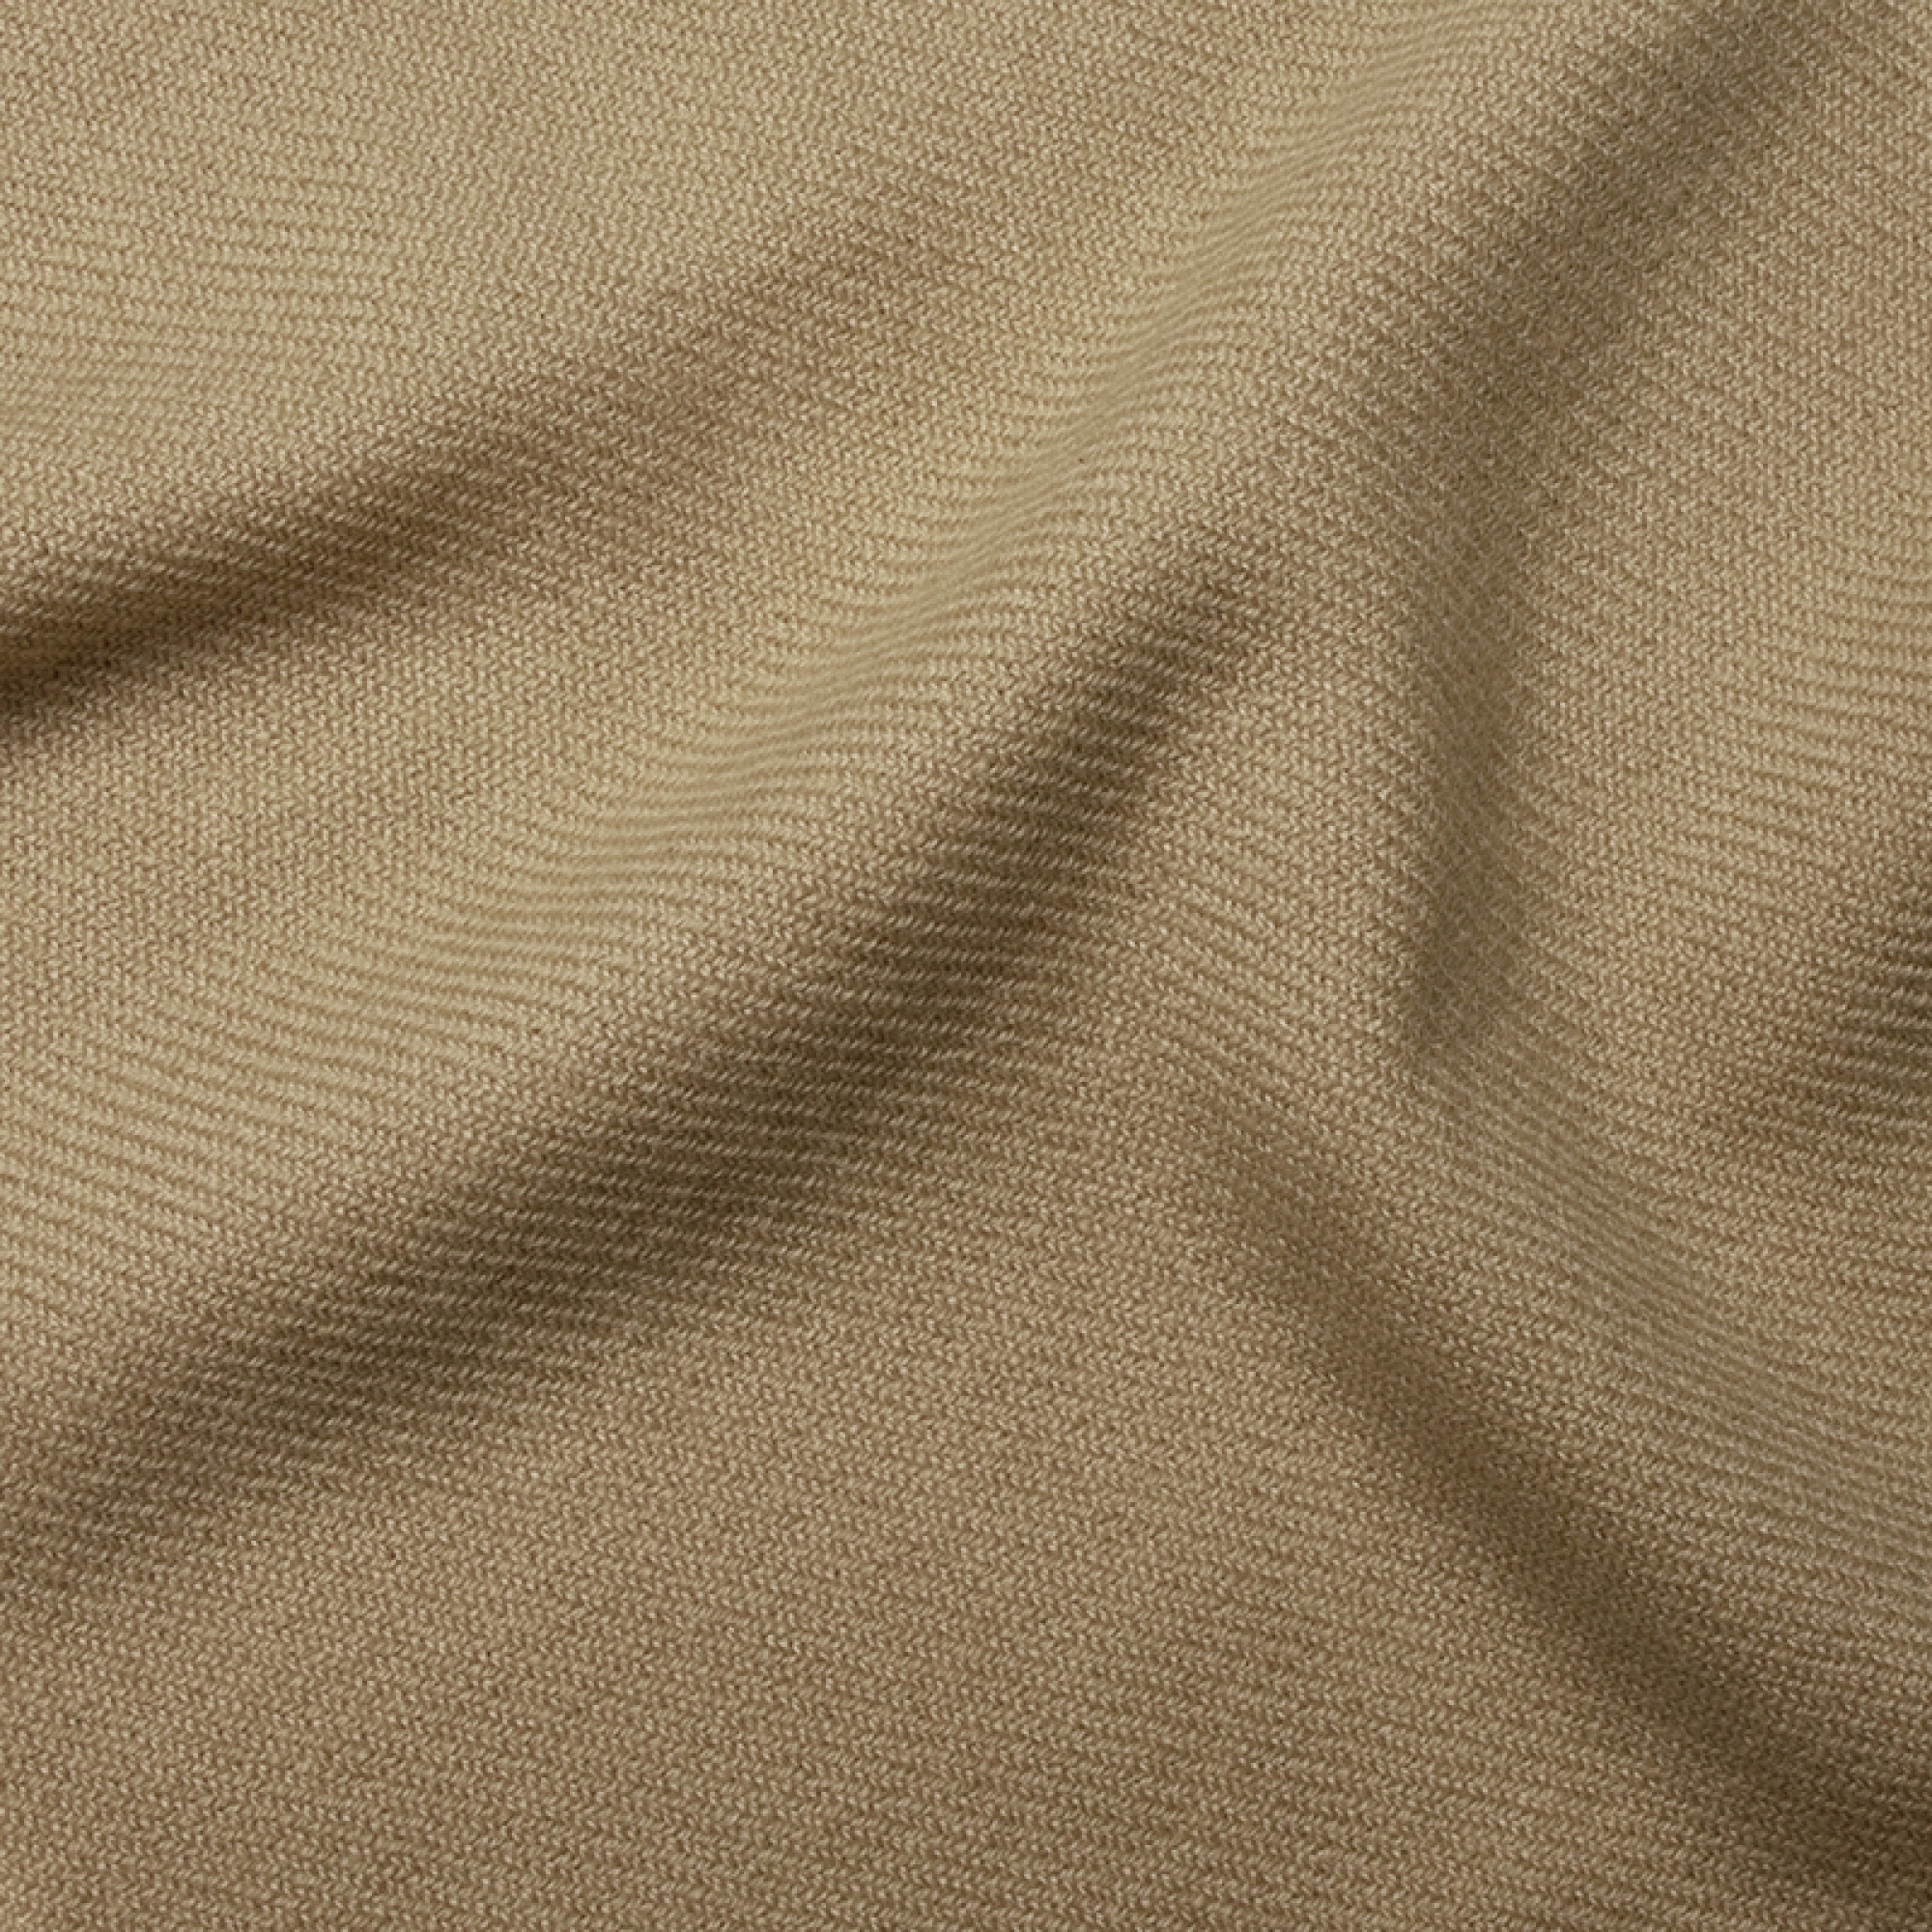 Cashmere accessori toodoo plain l 220 x 220 beige 220x220cm